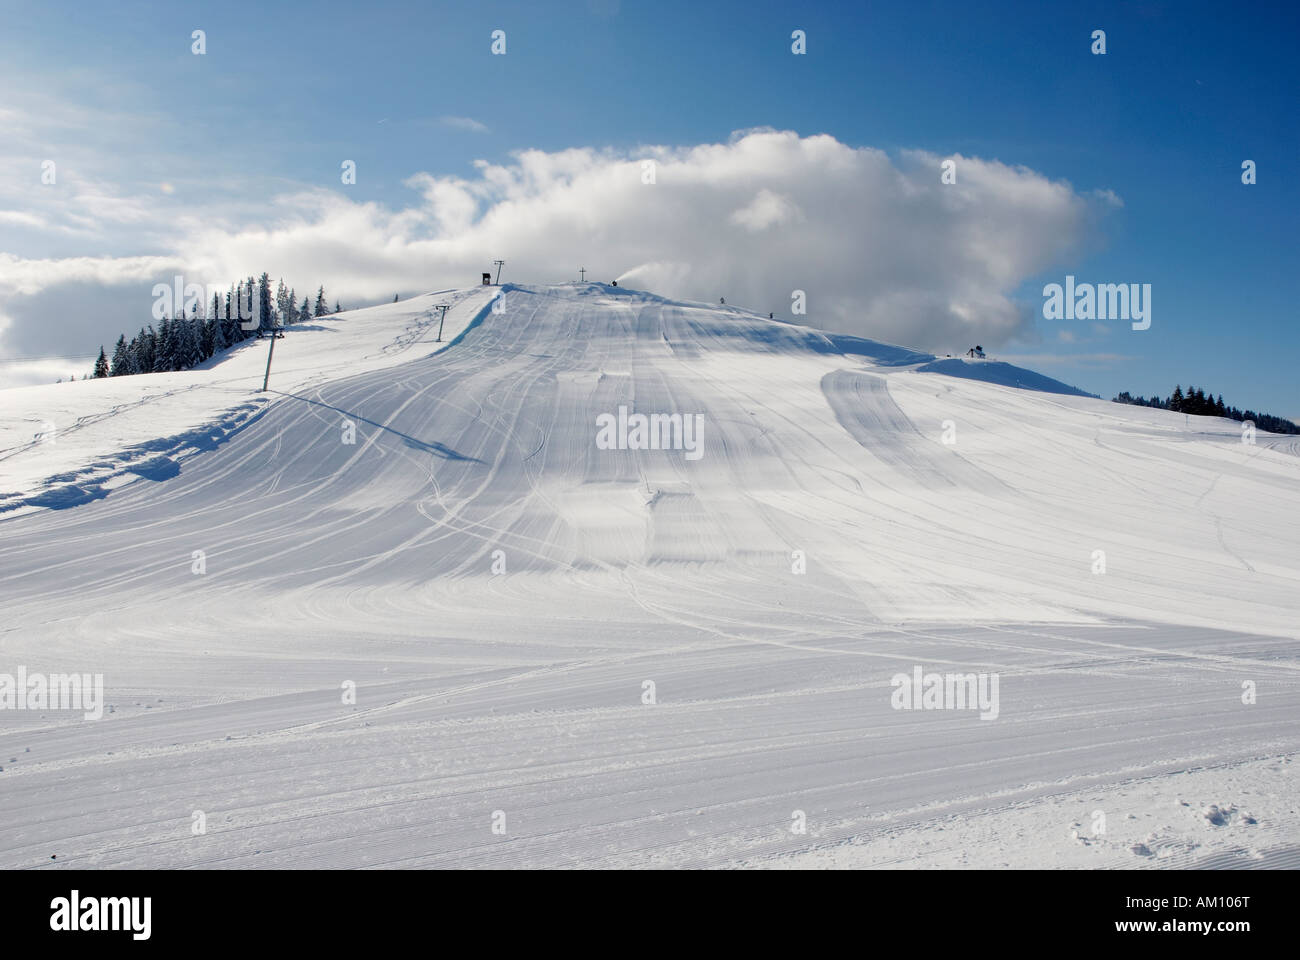 Skipiste mit Schneemaschine in Aktion, Österreich Stockfoto